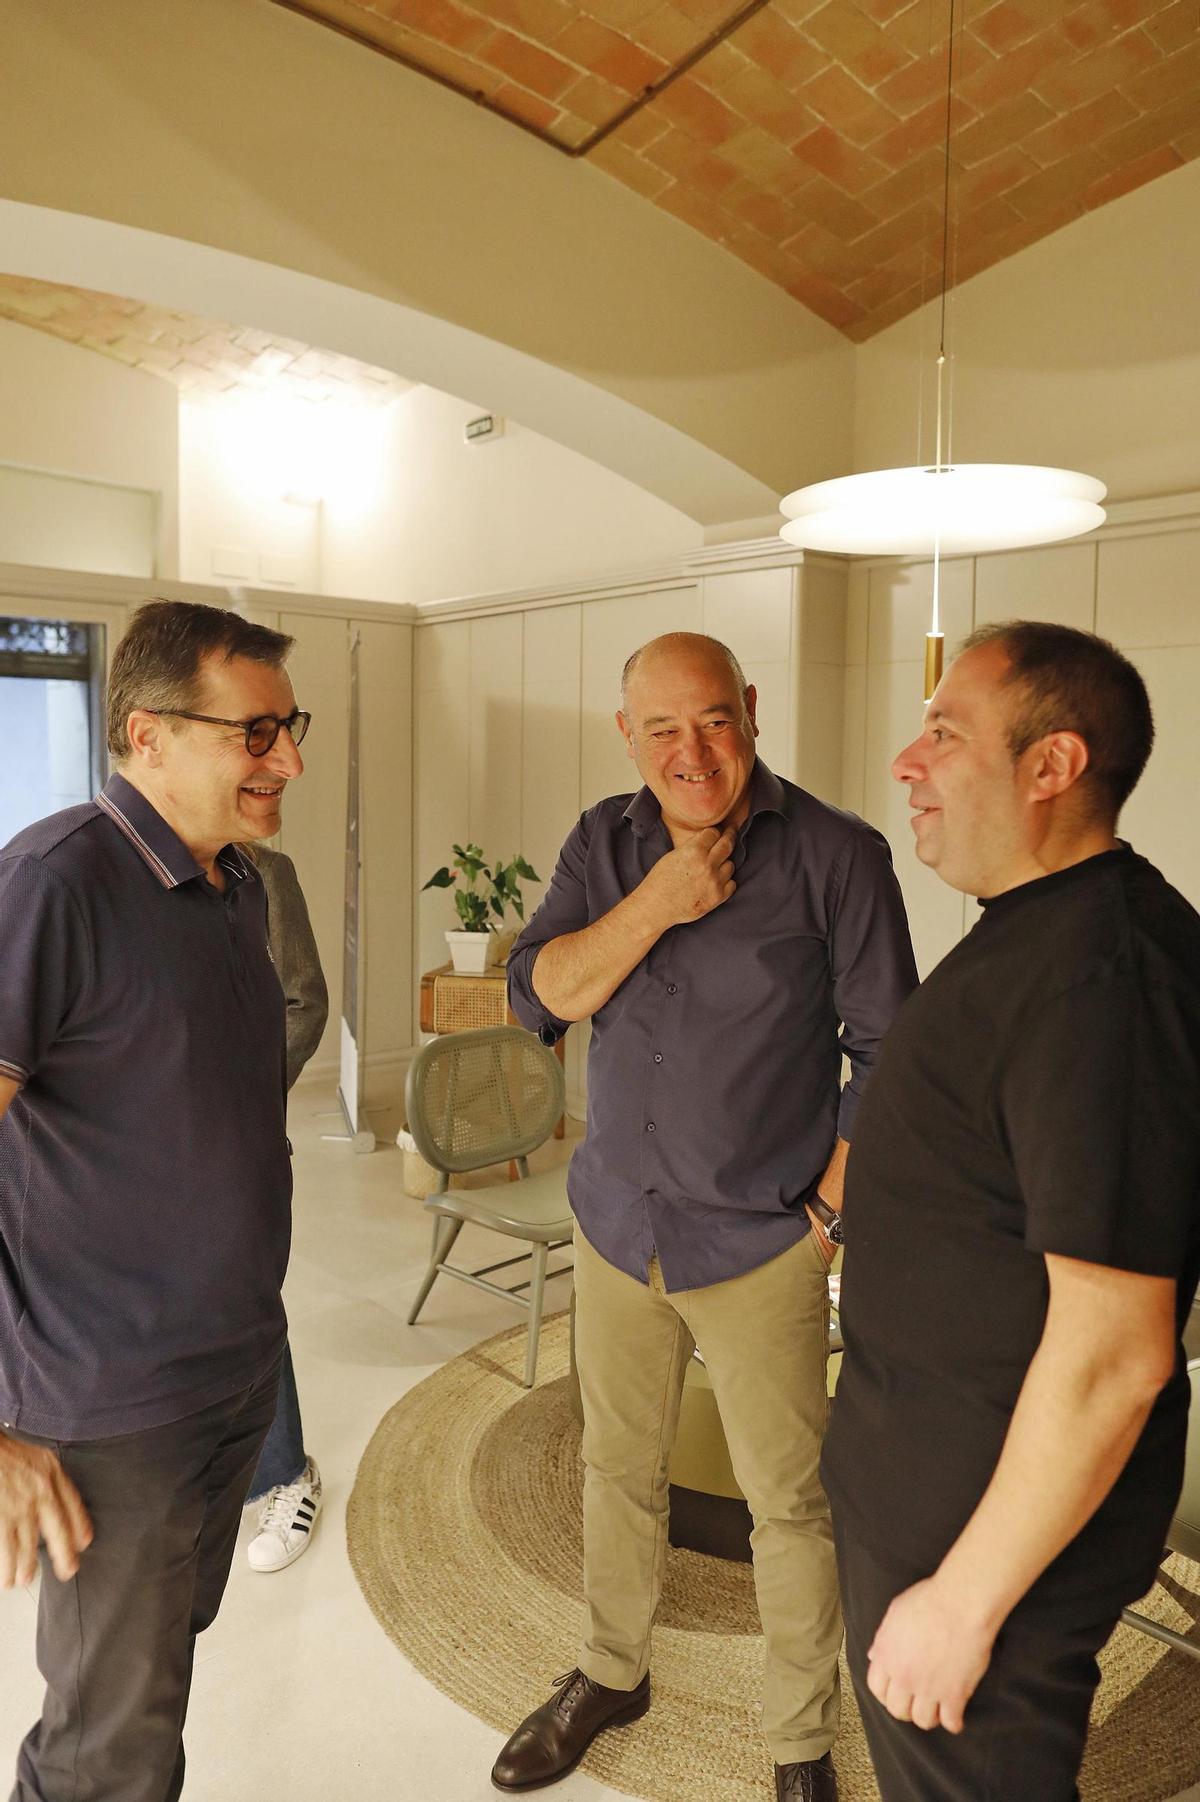 D’esquerra a dreta, els caps de sala Josep Roca (El Celler de Can Roca), Joan Carles Ibáñez (Lasarte) i Joan Morillo (Divinum), conversant fa uns dies a Girona.